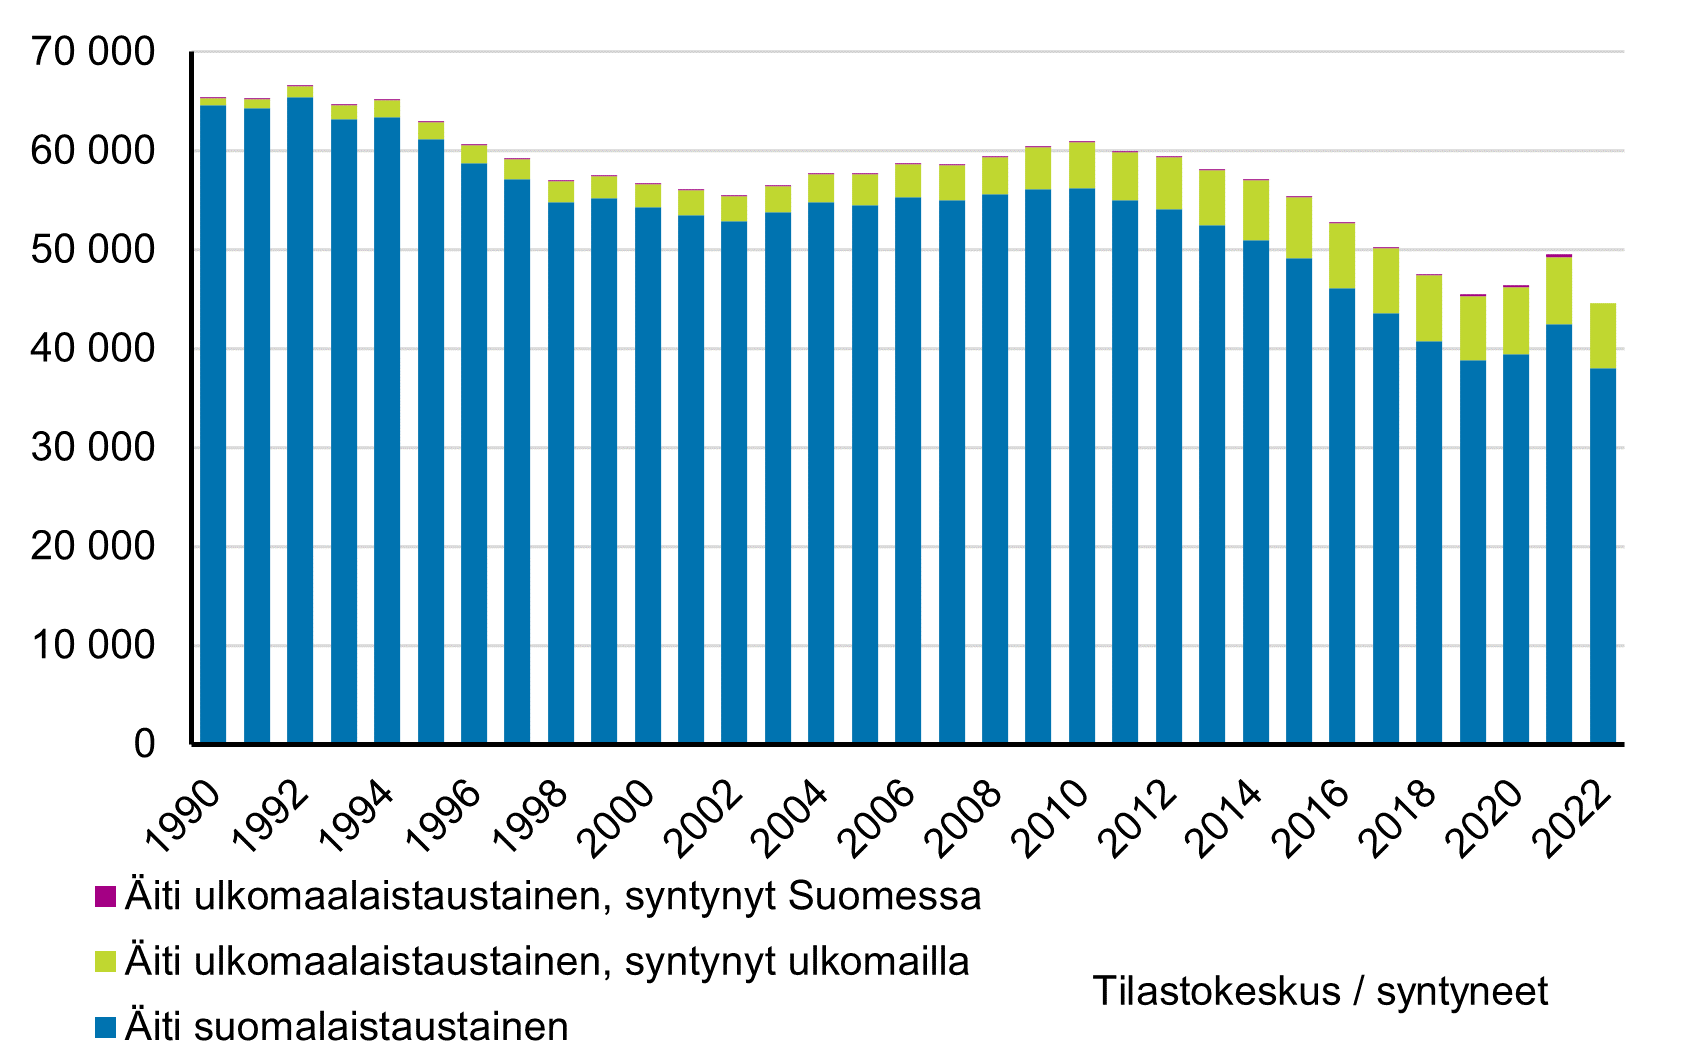 Pylväskuvio. Vuonna 1990 syntyneiden äideistä suurin osa oli suomalaistaustaisia. 1990-luvulla ulkomaalaistaustaisten äitien osuus alkoi kasvaa. Osuus on kasvanut yhä, mutta syntyneiden määrä on laskenut.